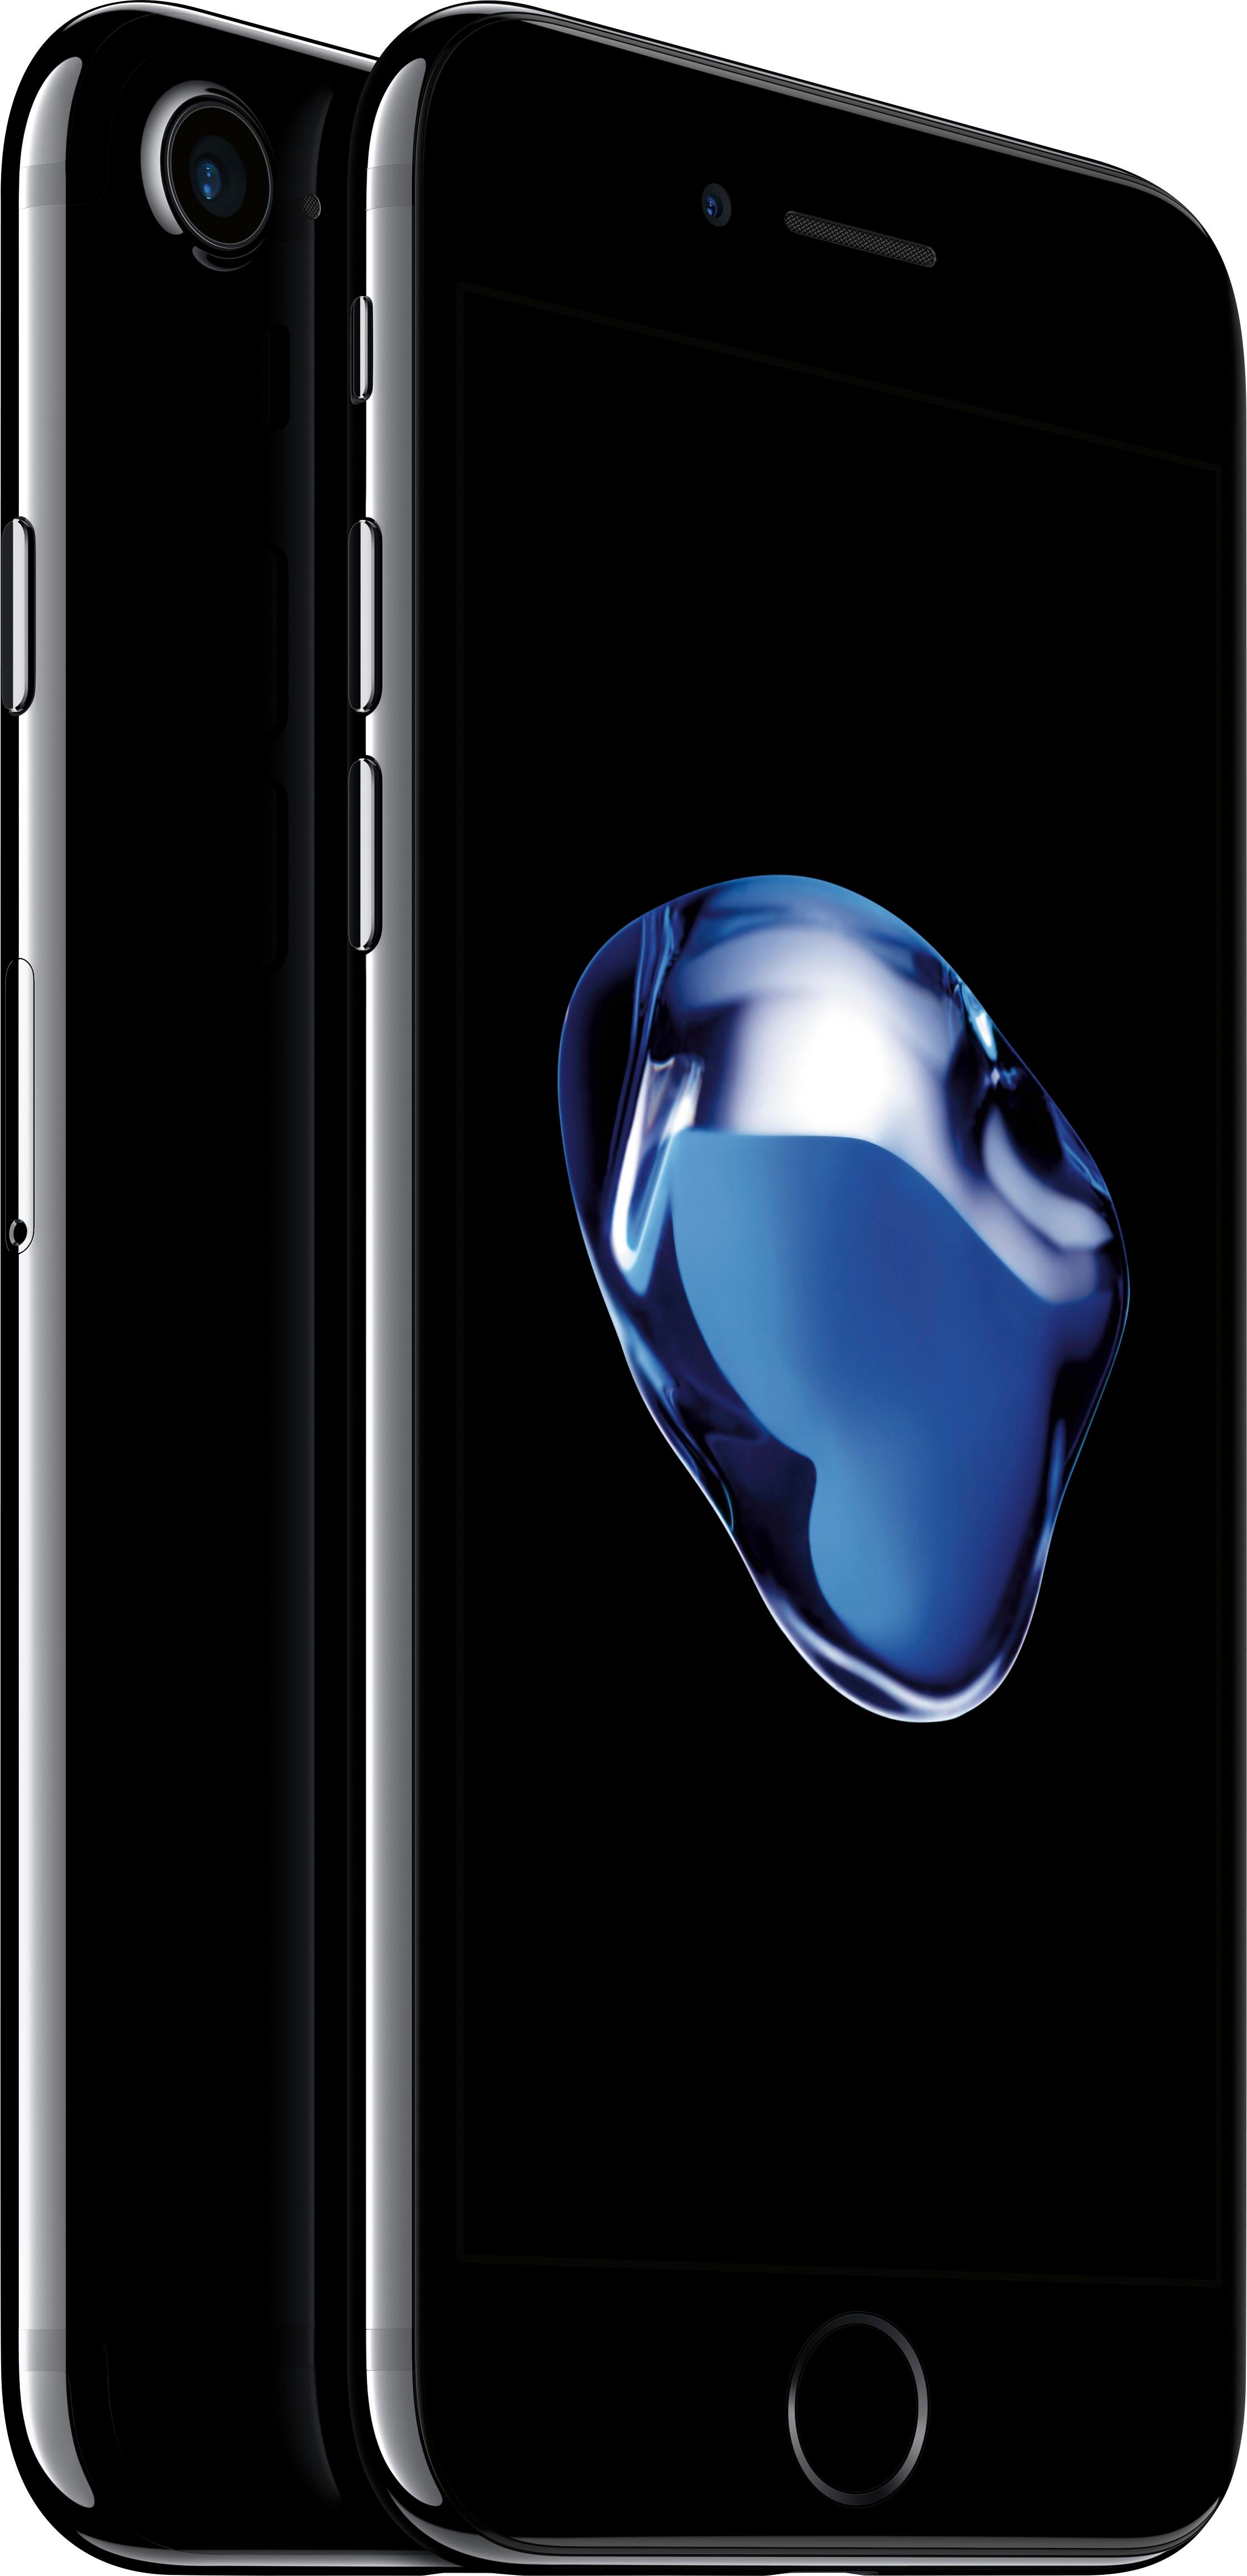 スマートフォン/携帯電話 スマートフォン本体 Best Buy: Apple iPhone 7 128GB Jet Black (AT&T) MN8Q2LL/A